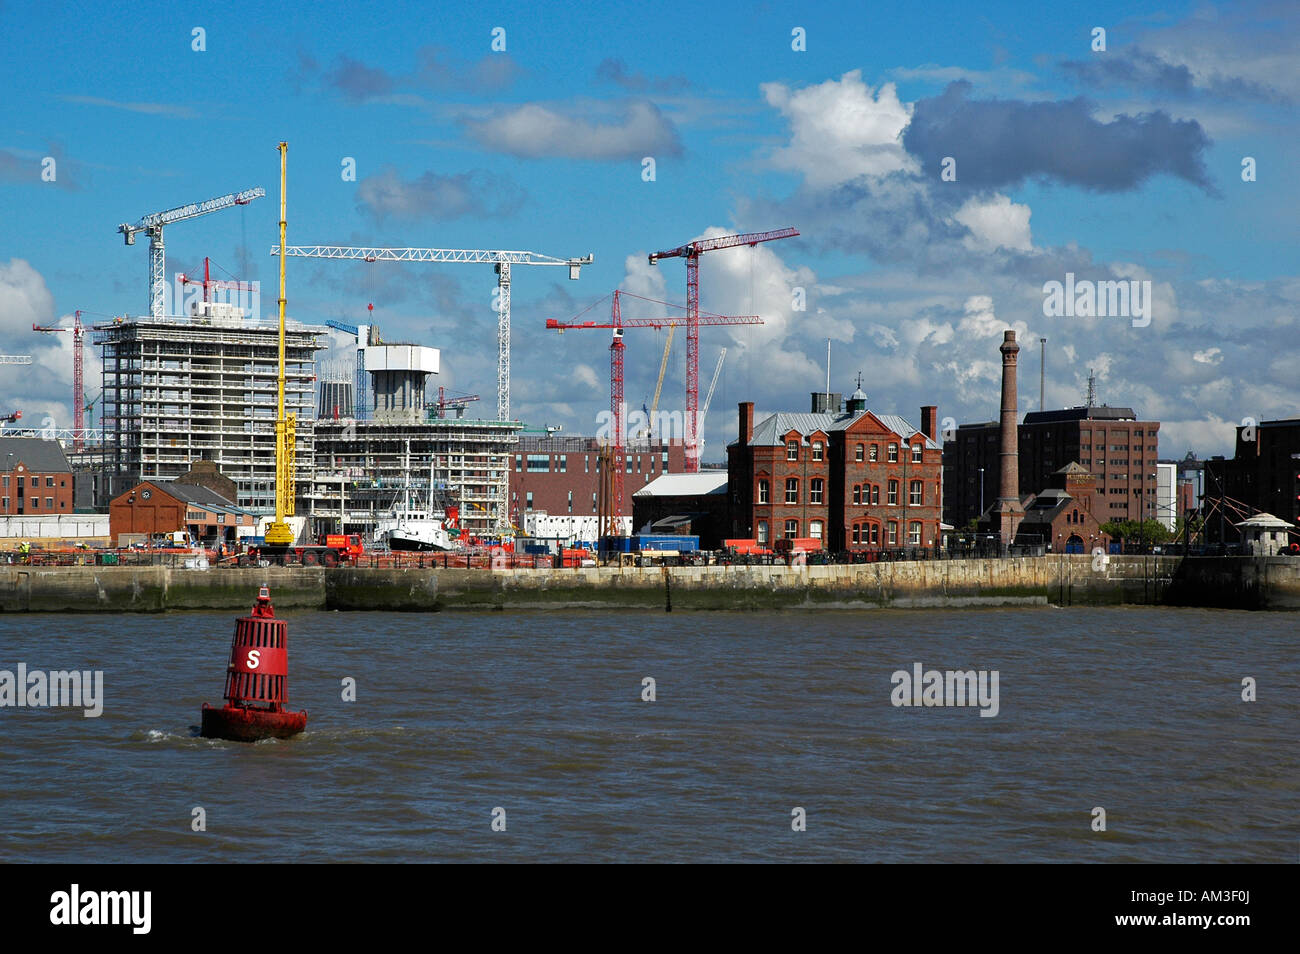 Les bâtiments du front de mer vue de la Mersey ferry, Liverpool, Angleterre Banque D'Images